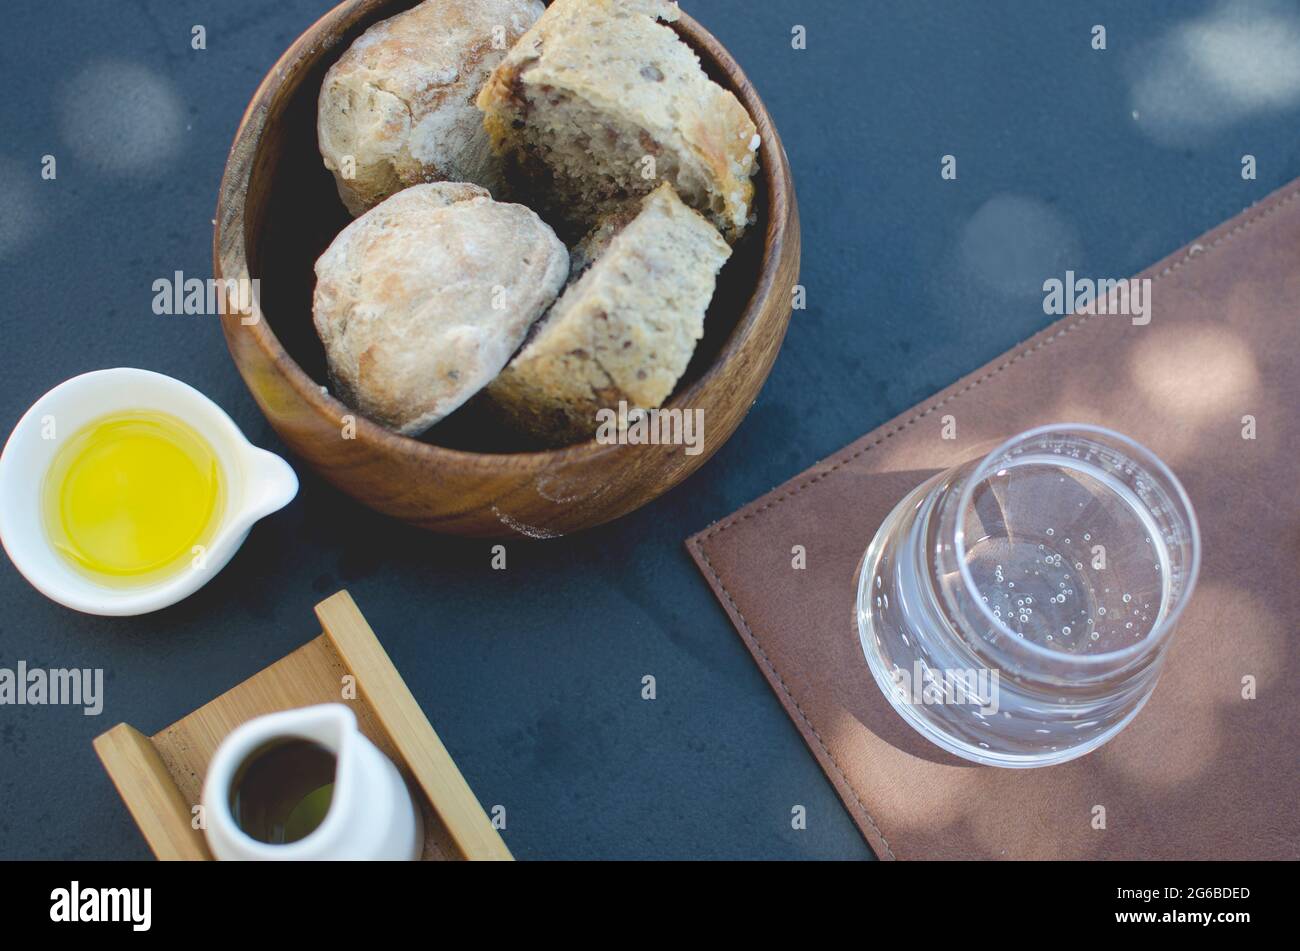 Vista panoramica di un cesto di pane, olio d'oliva e un bicchiere d'acqua frizzante Foto Stock